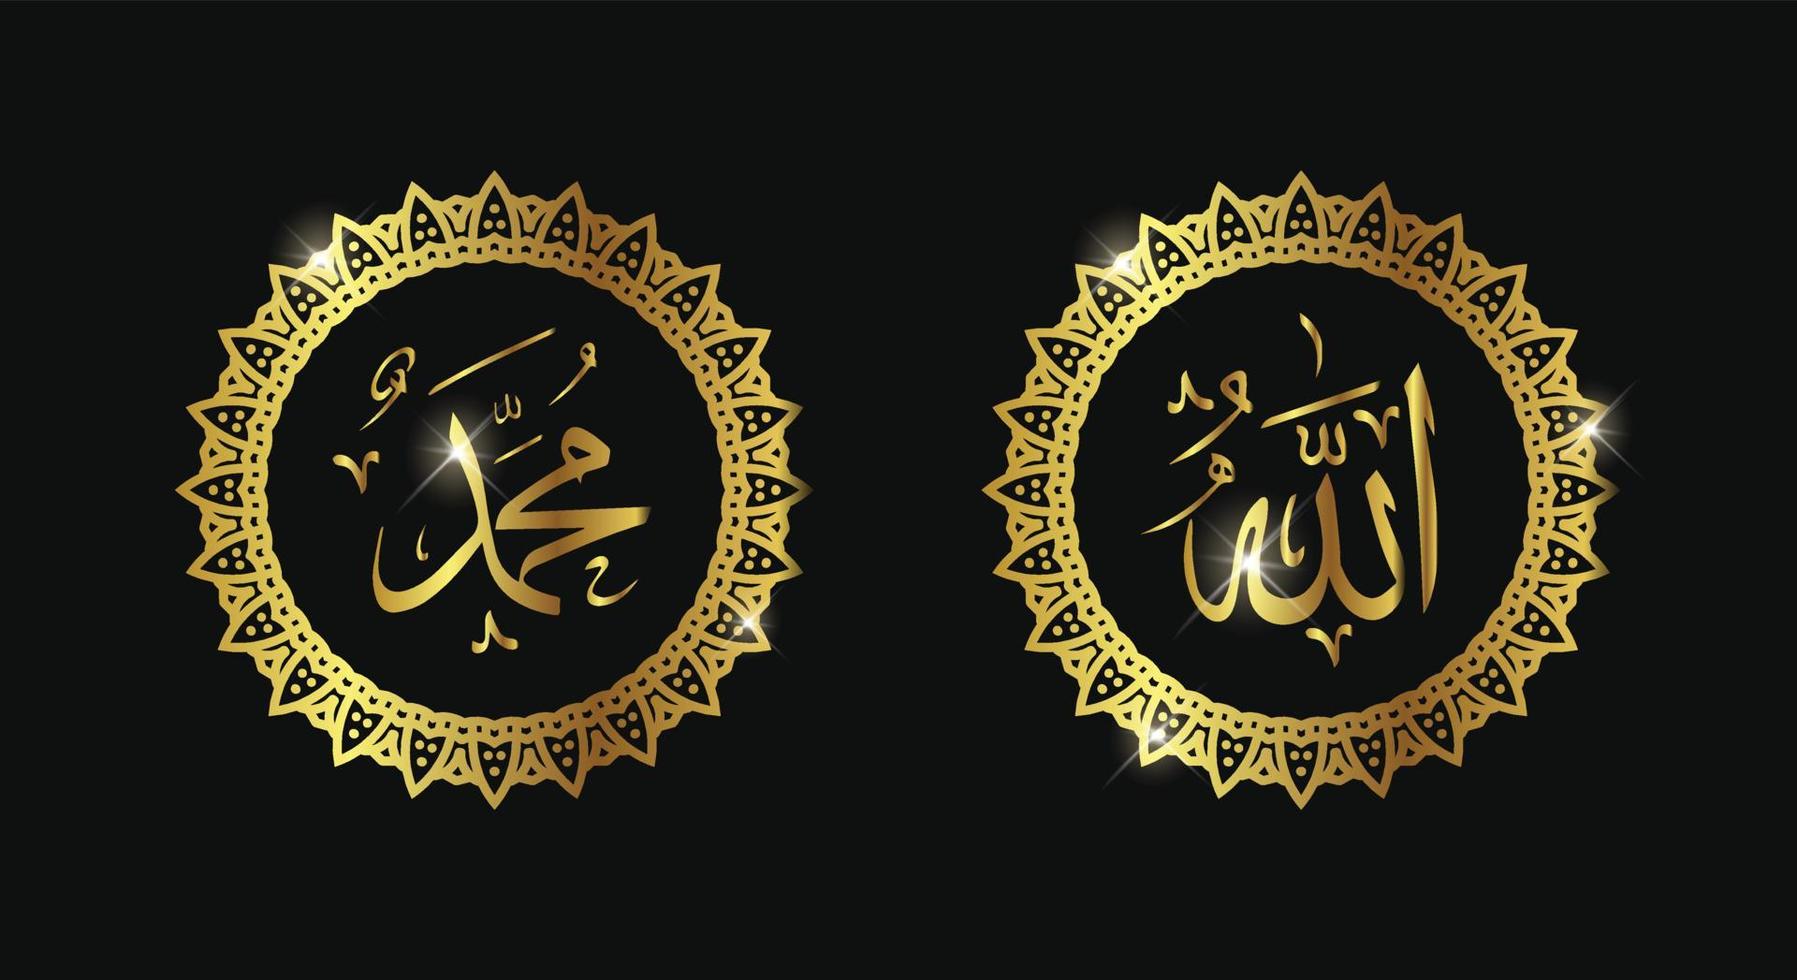 allah muhammad com moldura de círculo e cor dourada ou cor de luxo vetor